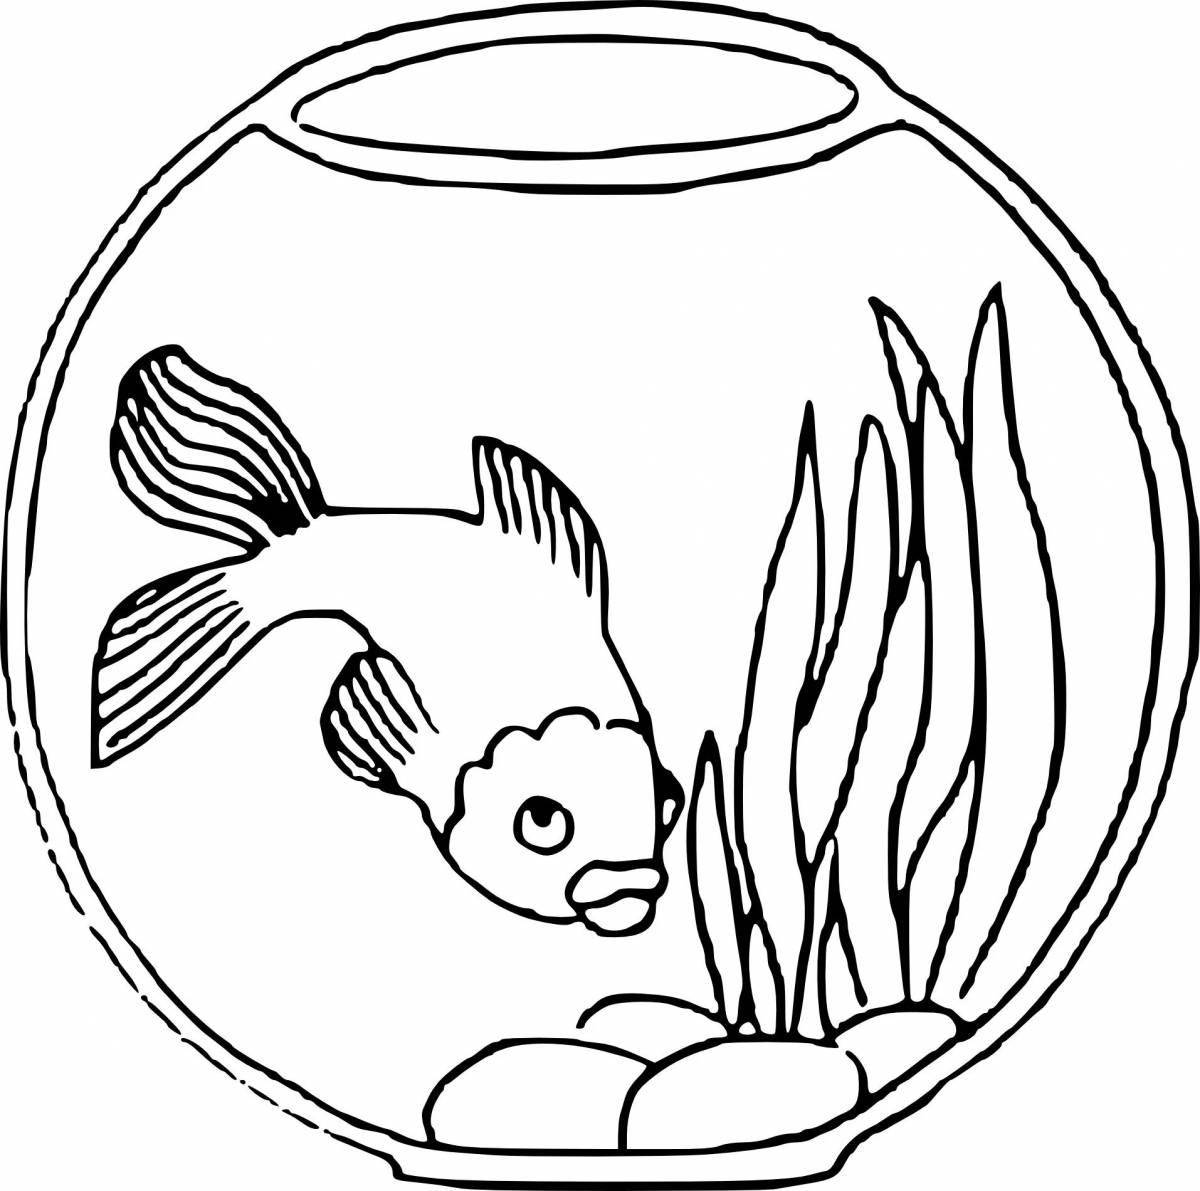 Delicate fish in an aquarium